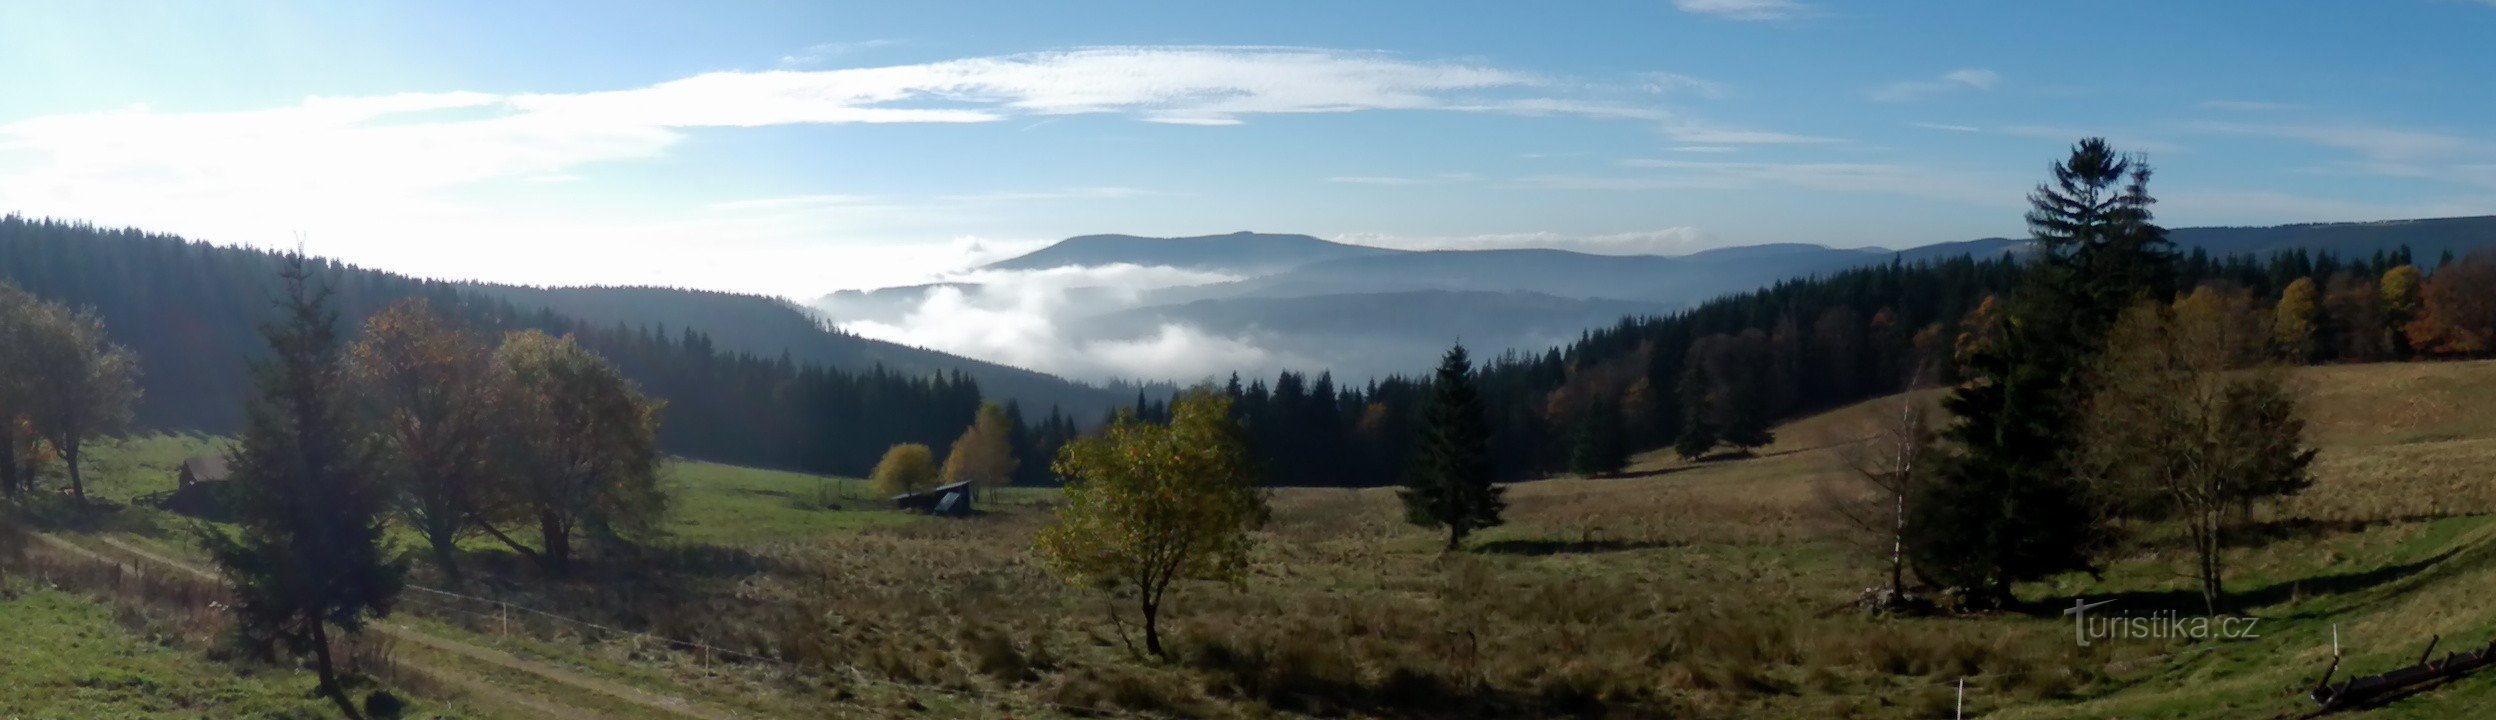 Panoramaudsigt over Přední og Zadní Žalý og den fortsatte højderyg med Janský vrche